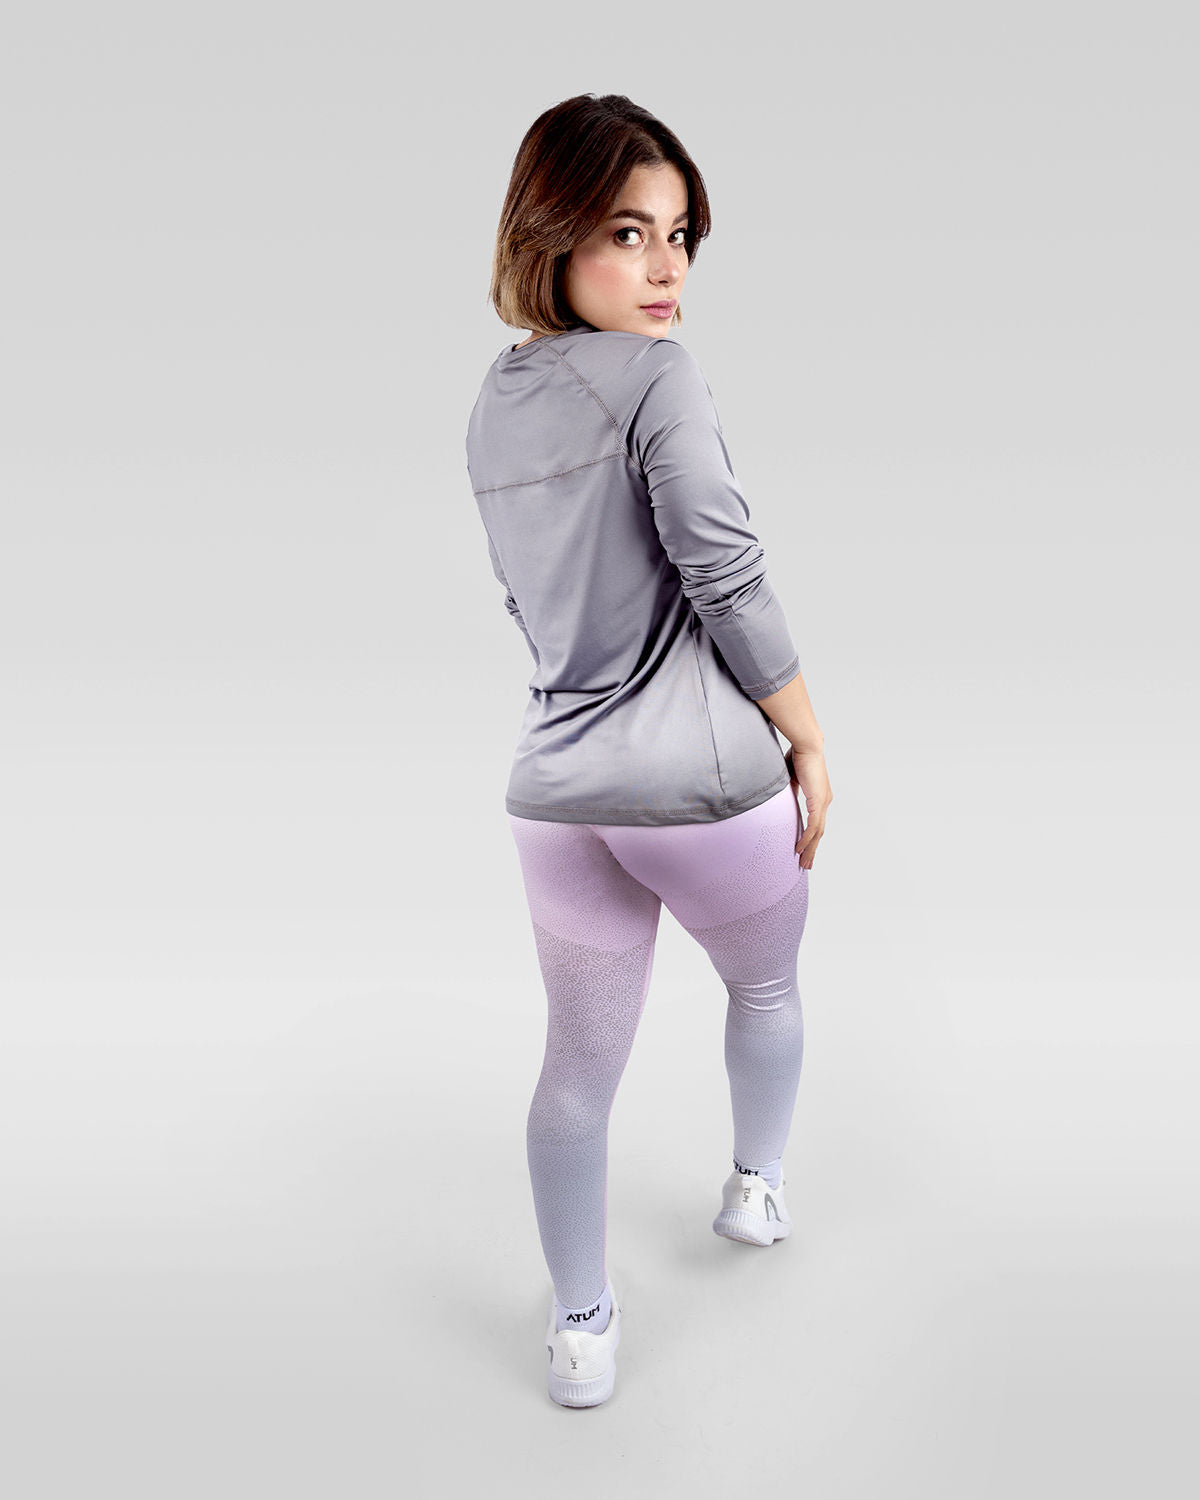 Atum women's gradient leggings